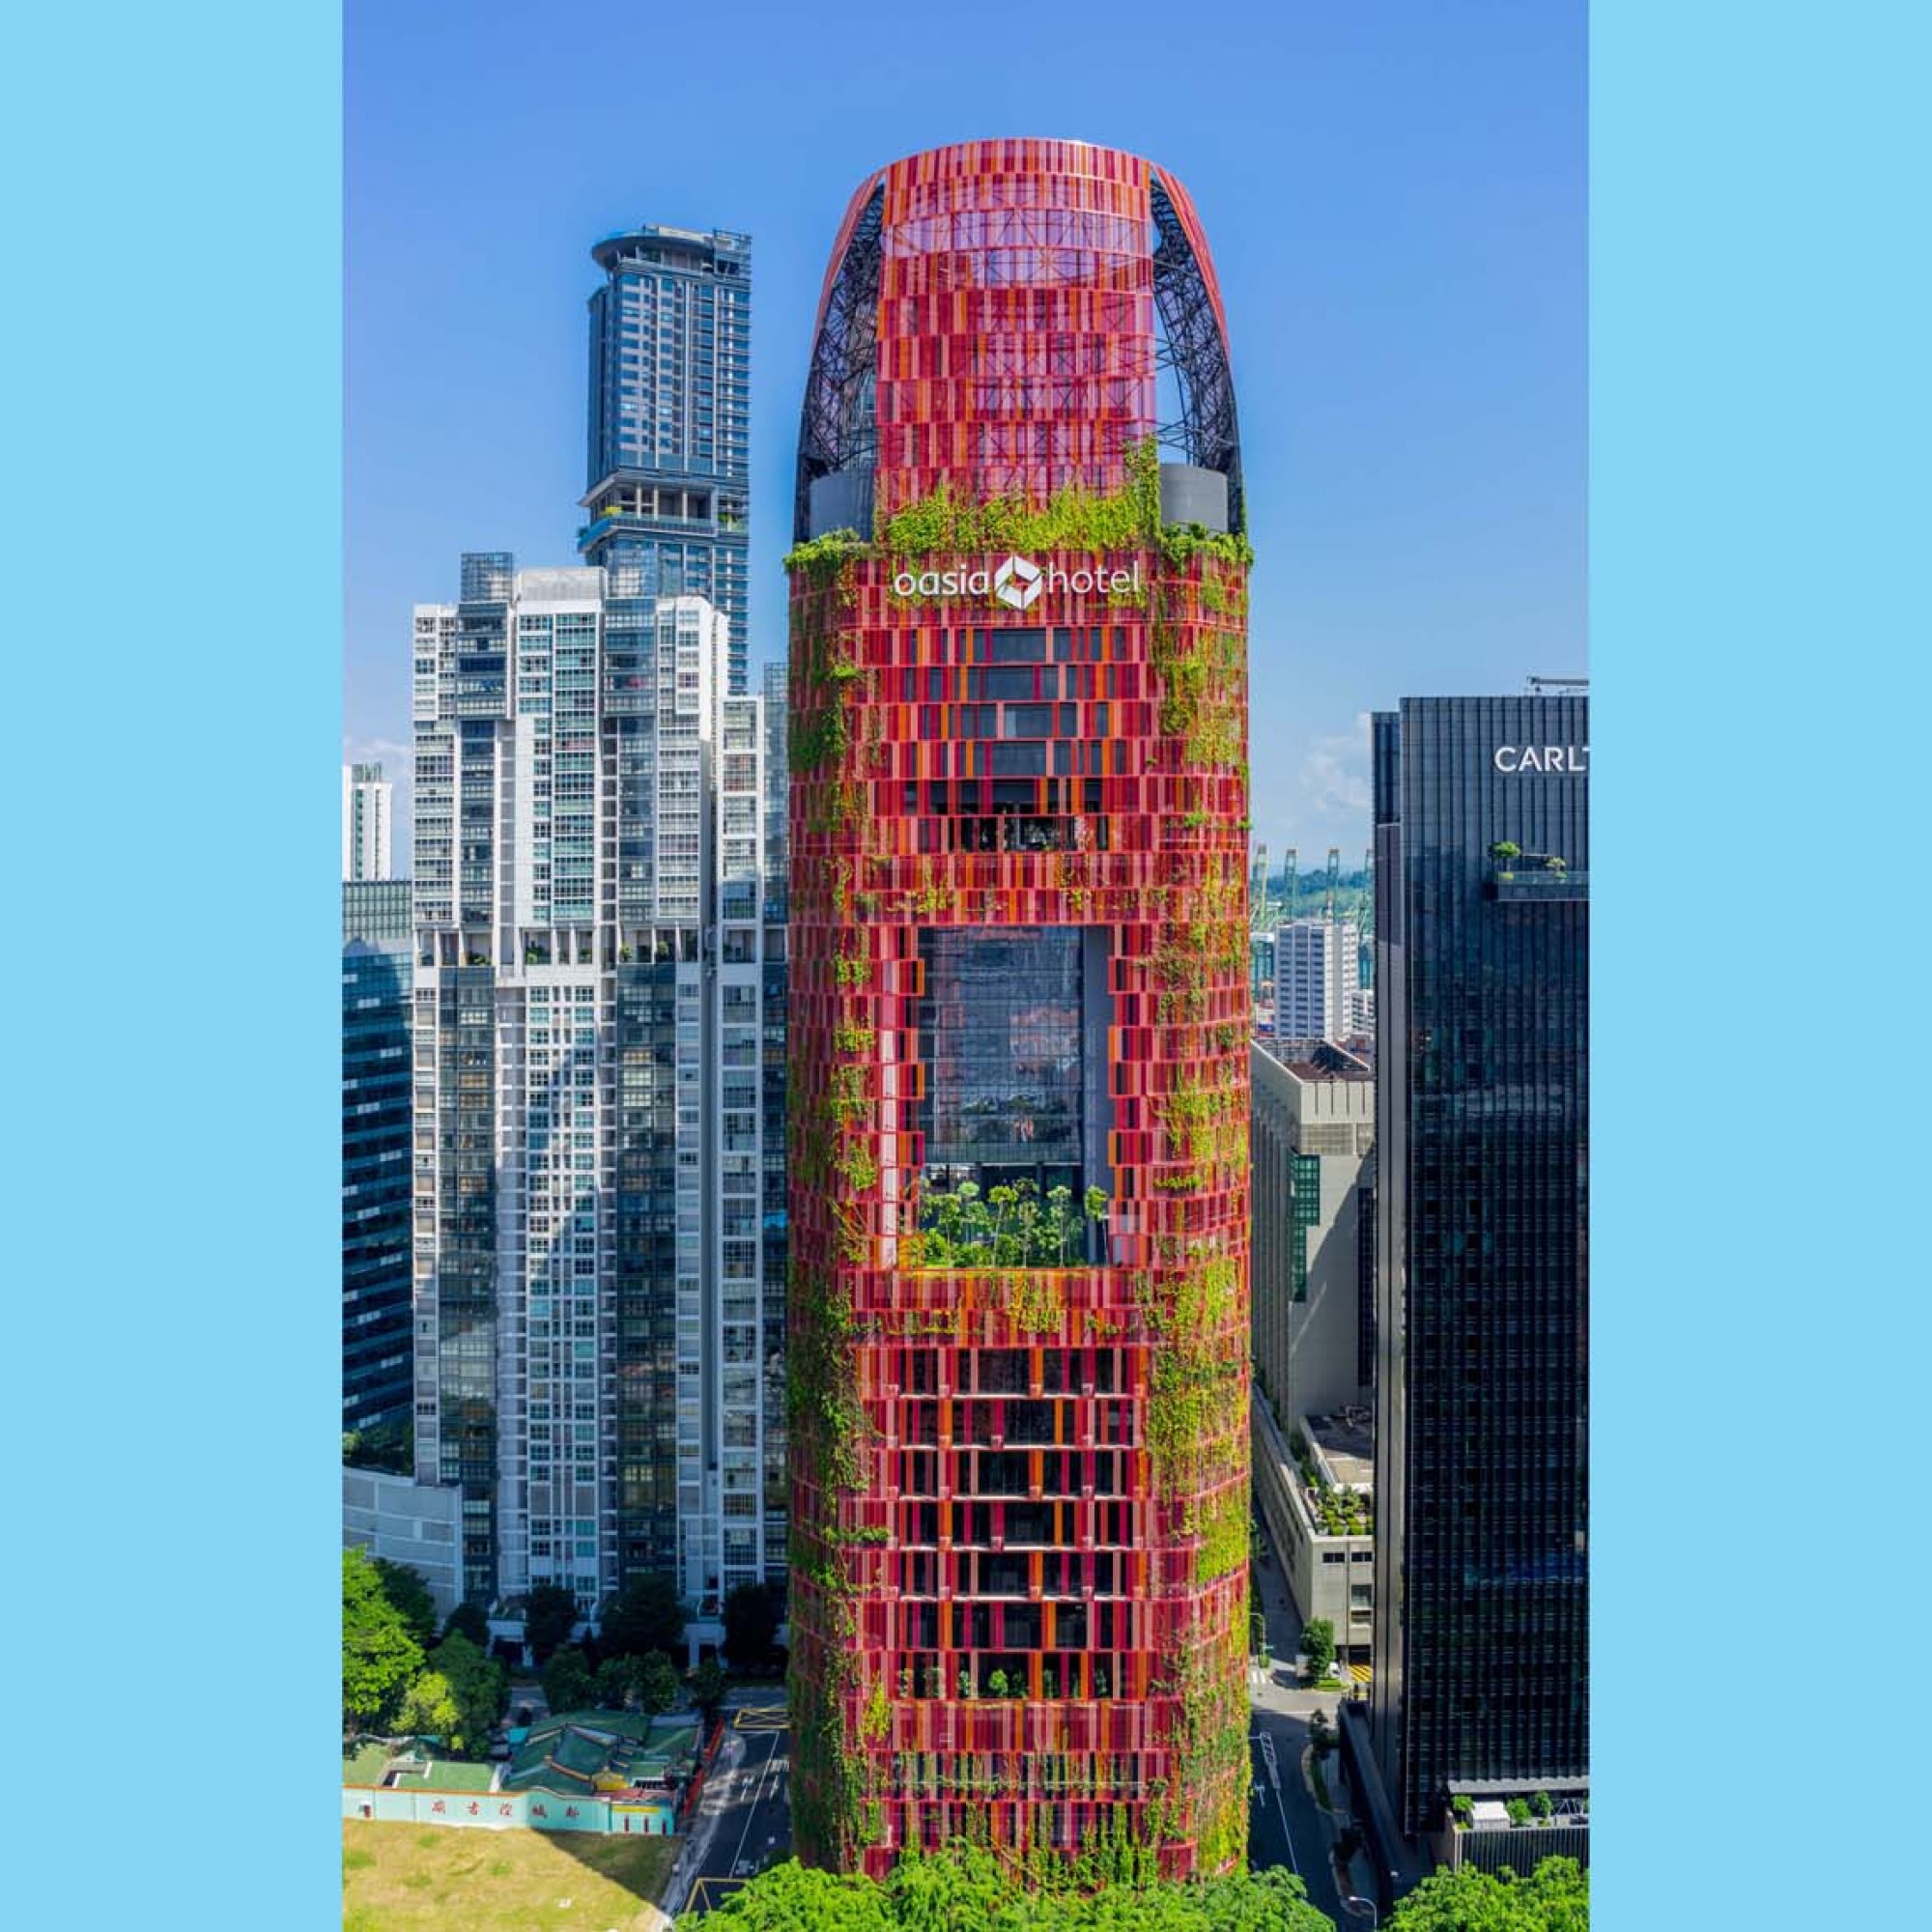 Platz 3: Oasia Hotel Downtown in Singapur von WOHA Architects Pte. LTD., Höhe 190 Meter, 27 Etagen.